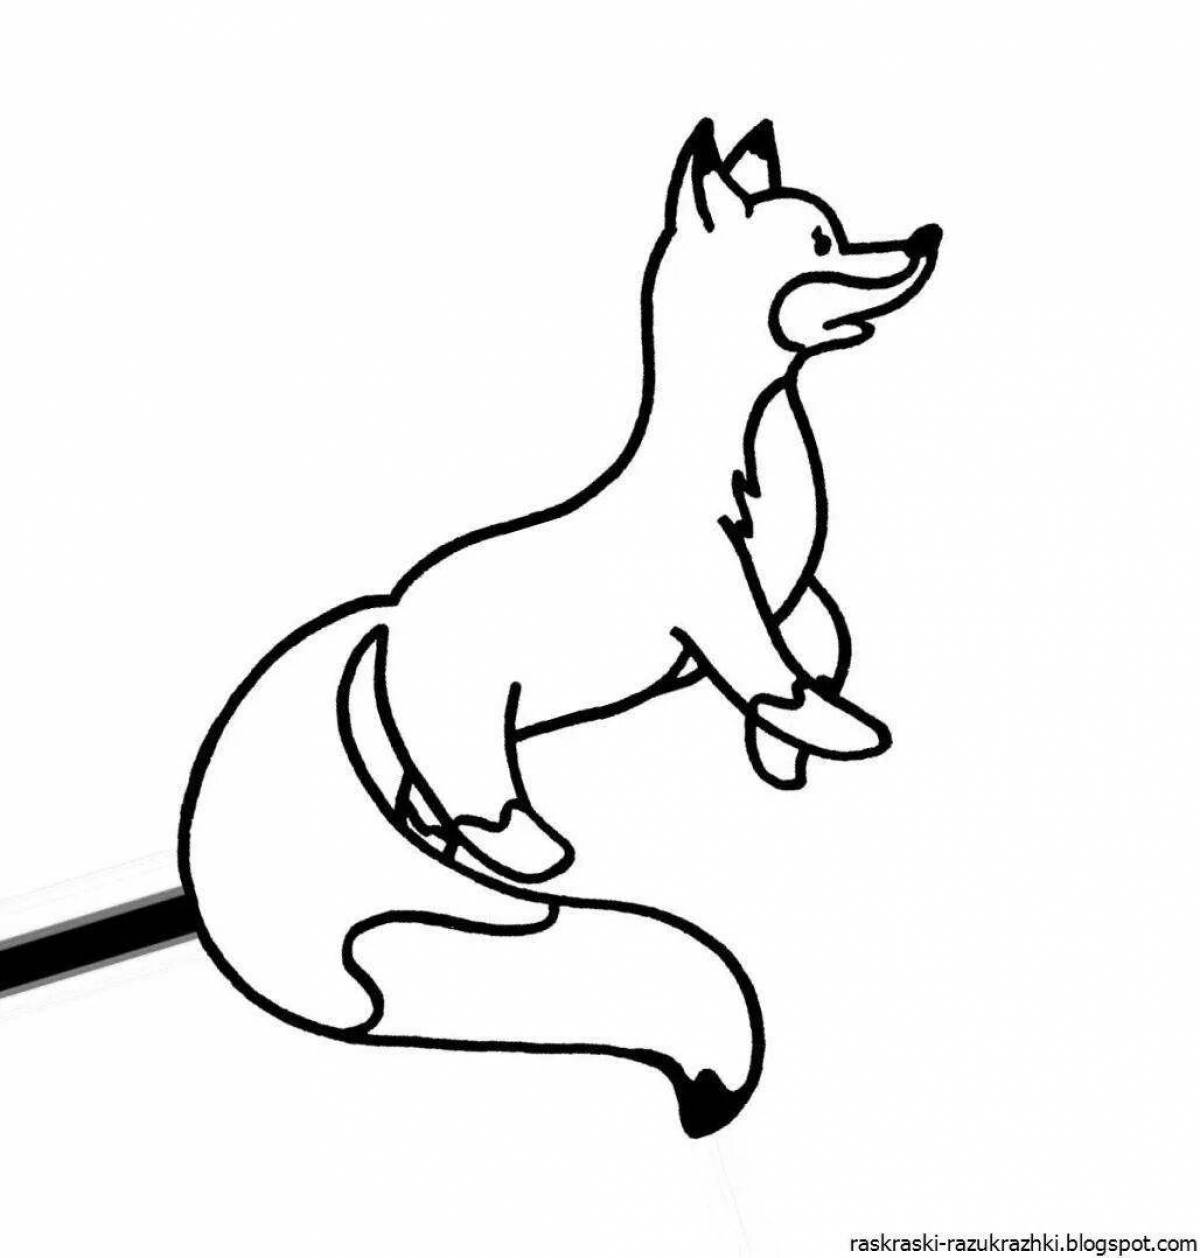 Радостный рисунок лисы для детей